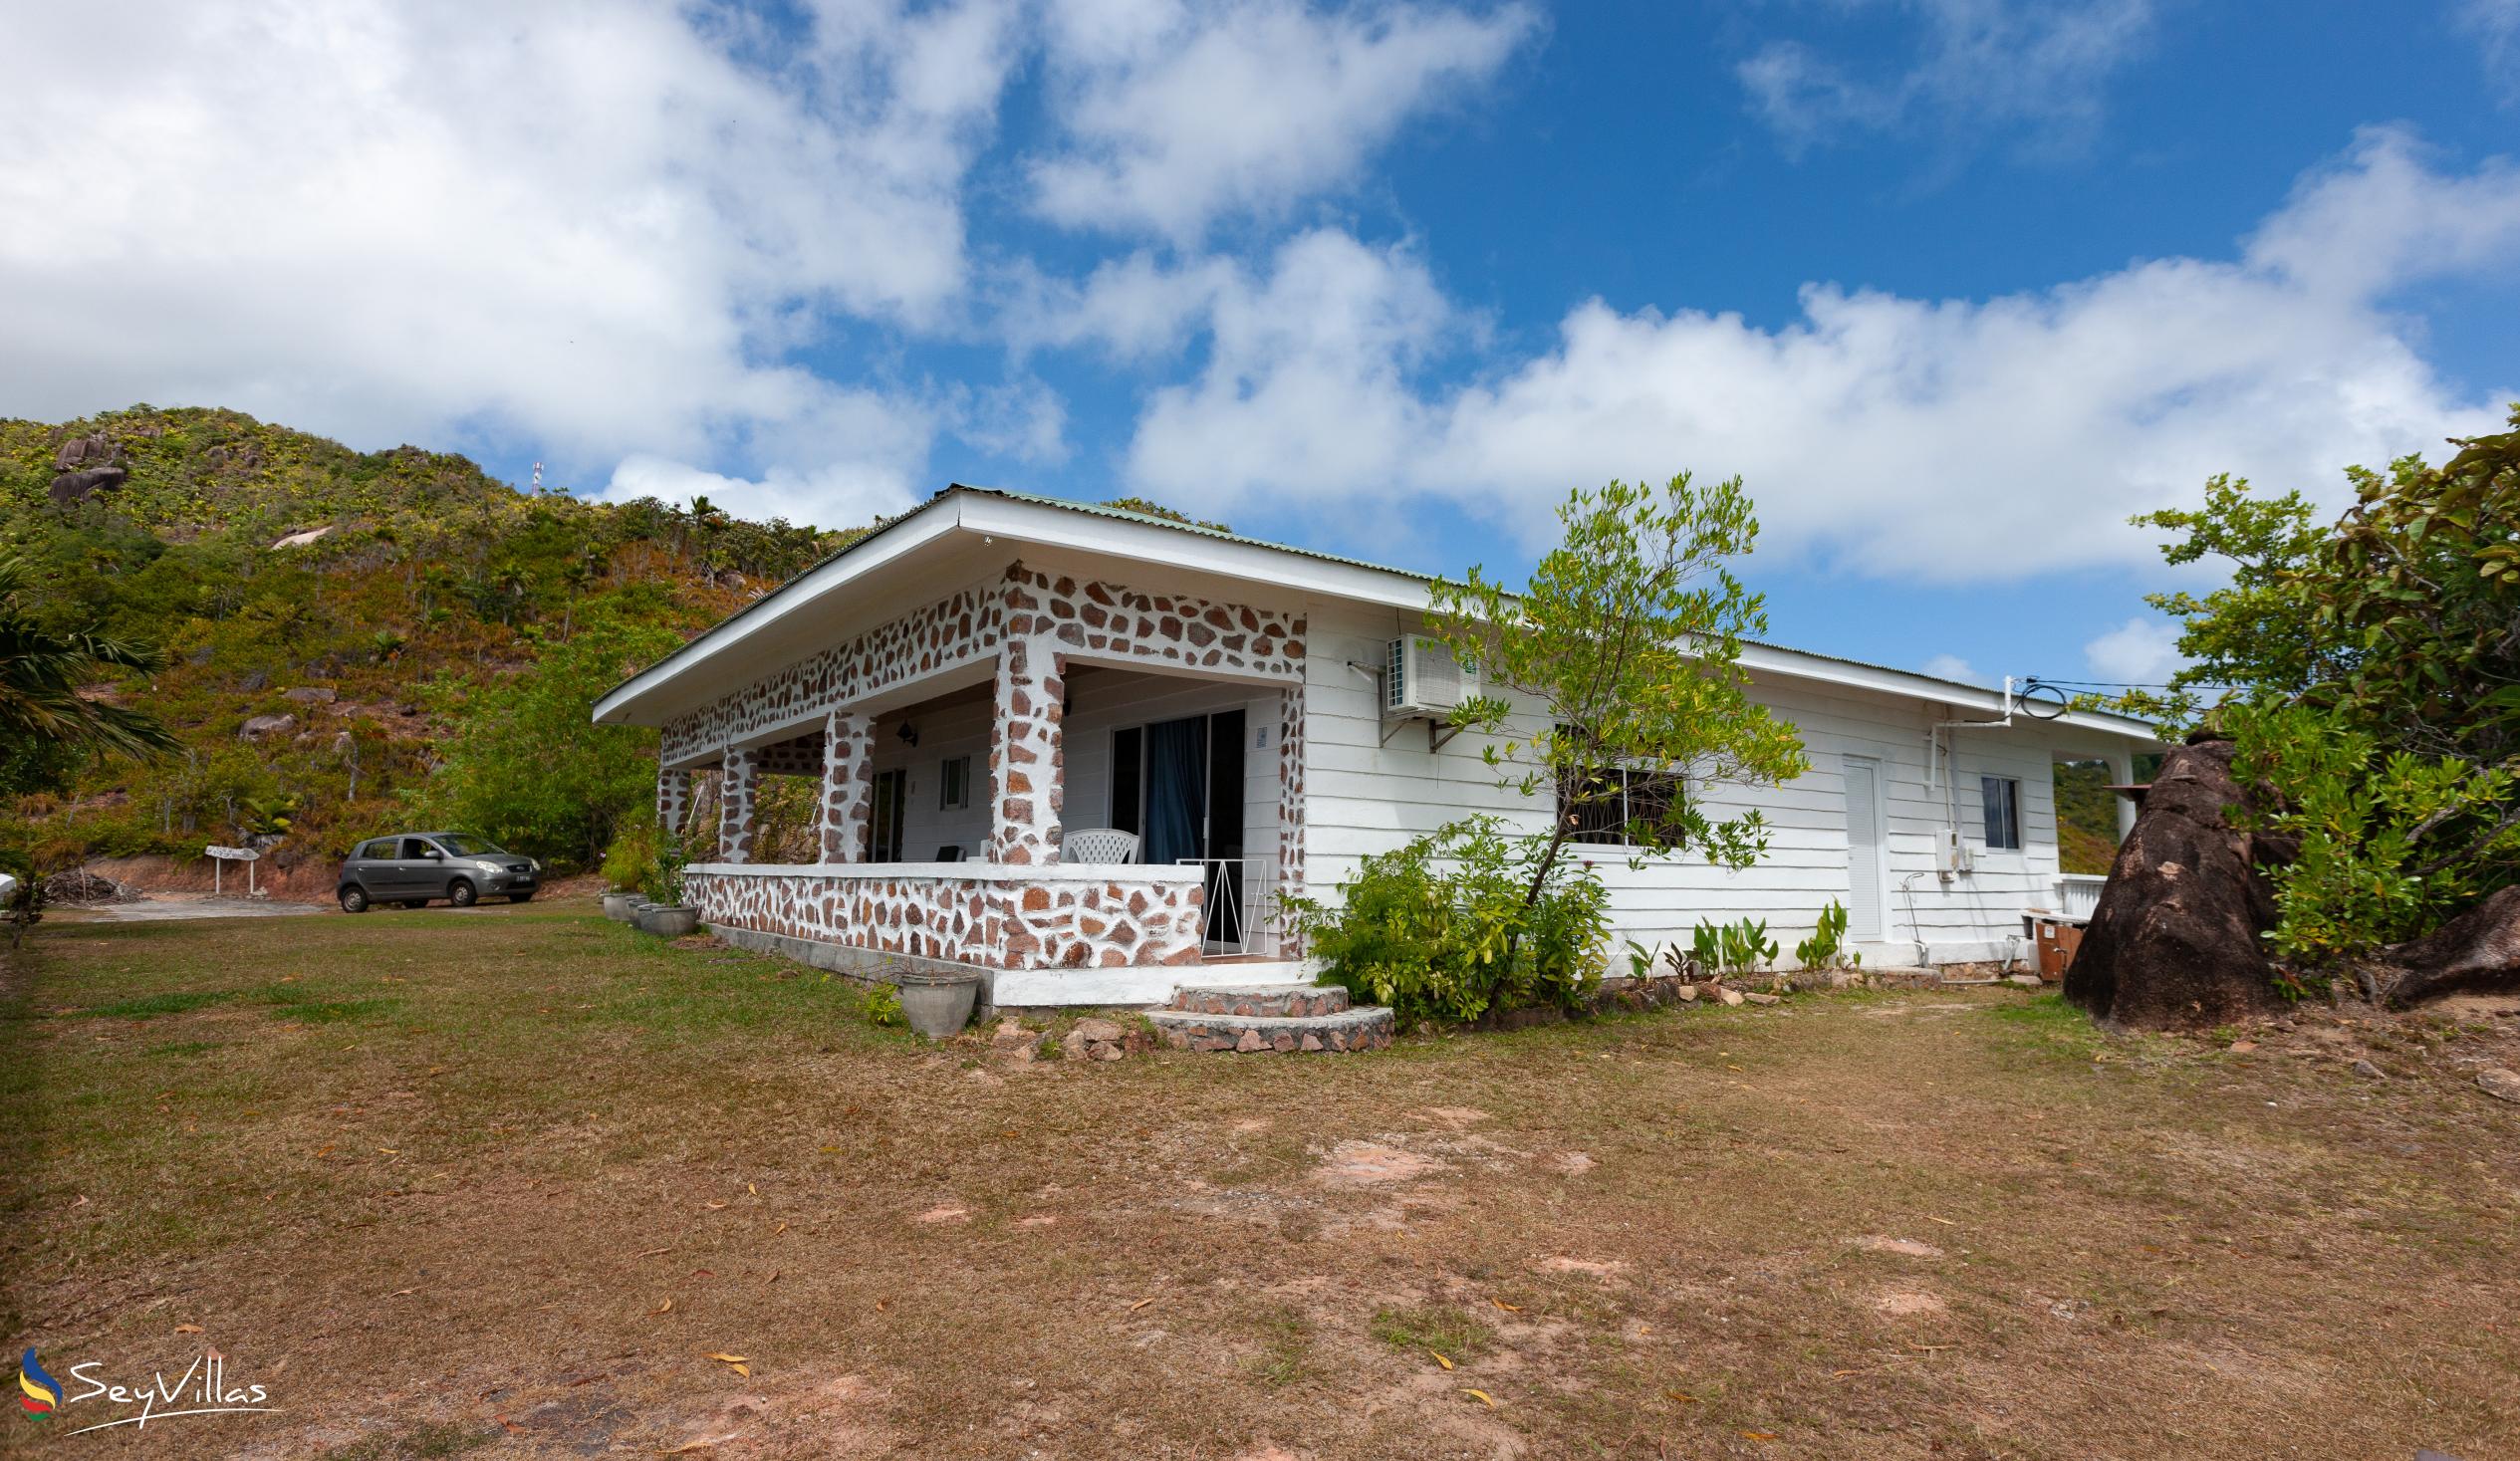 Foto 13: Maison du Soleil - Extérieur - Praslin (Seychelles)